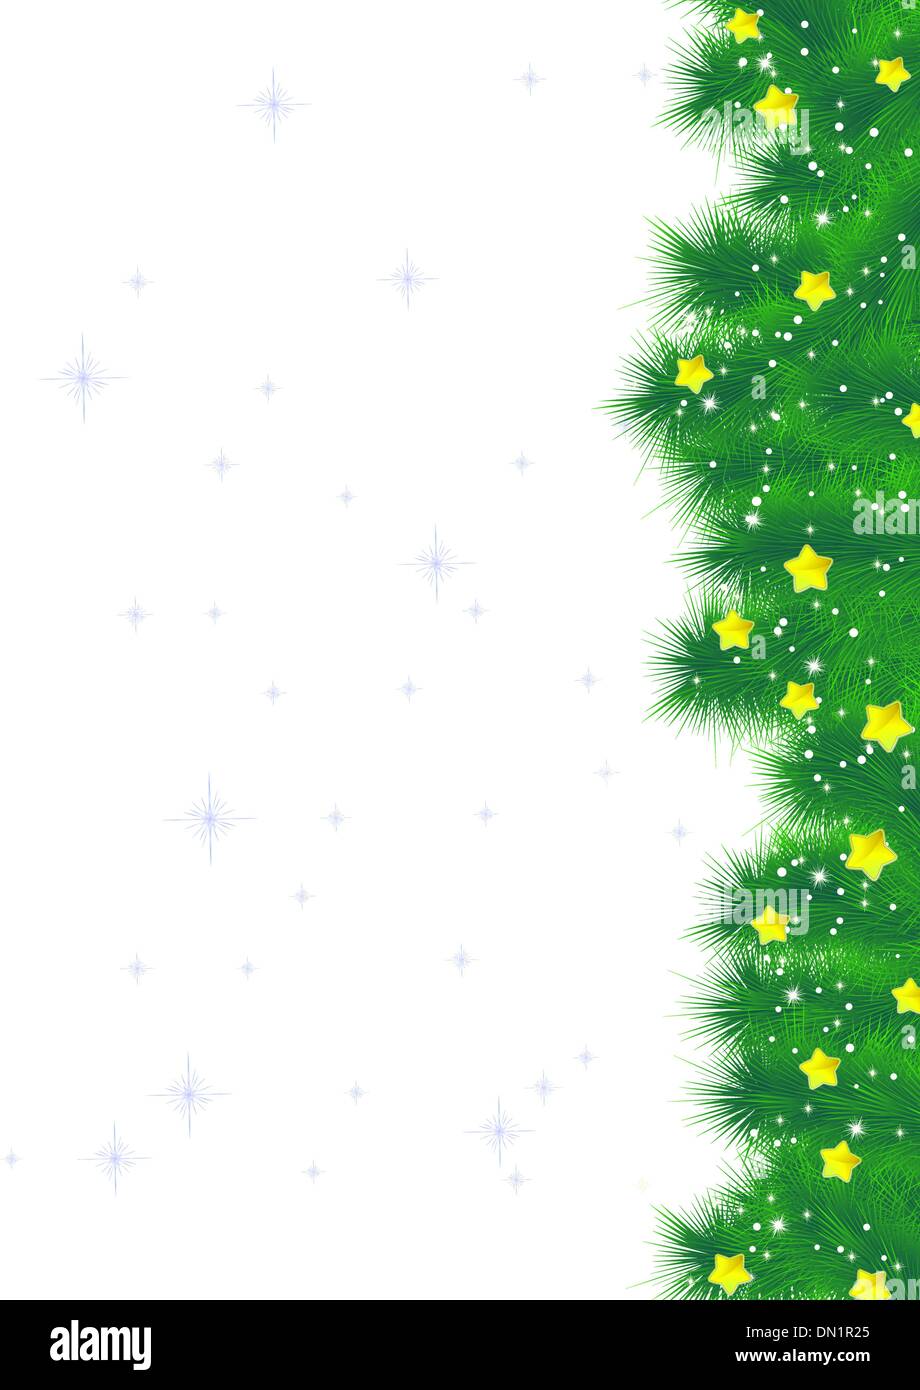 Weihnachtsbaum Zweig auf blauem Grund. EPS 8 Stock Vektor